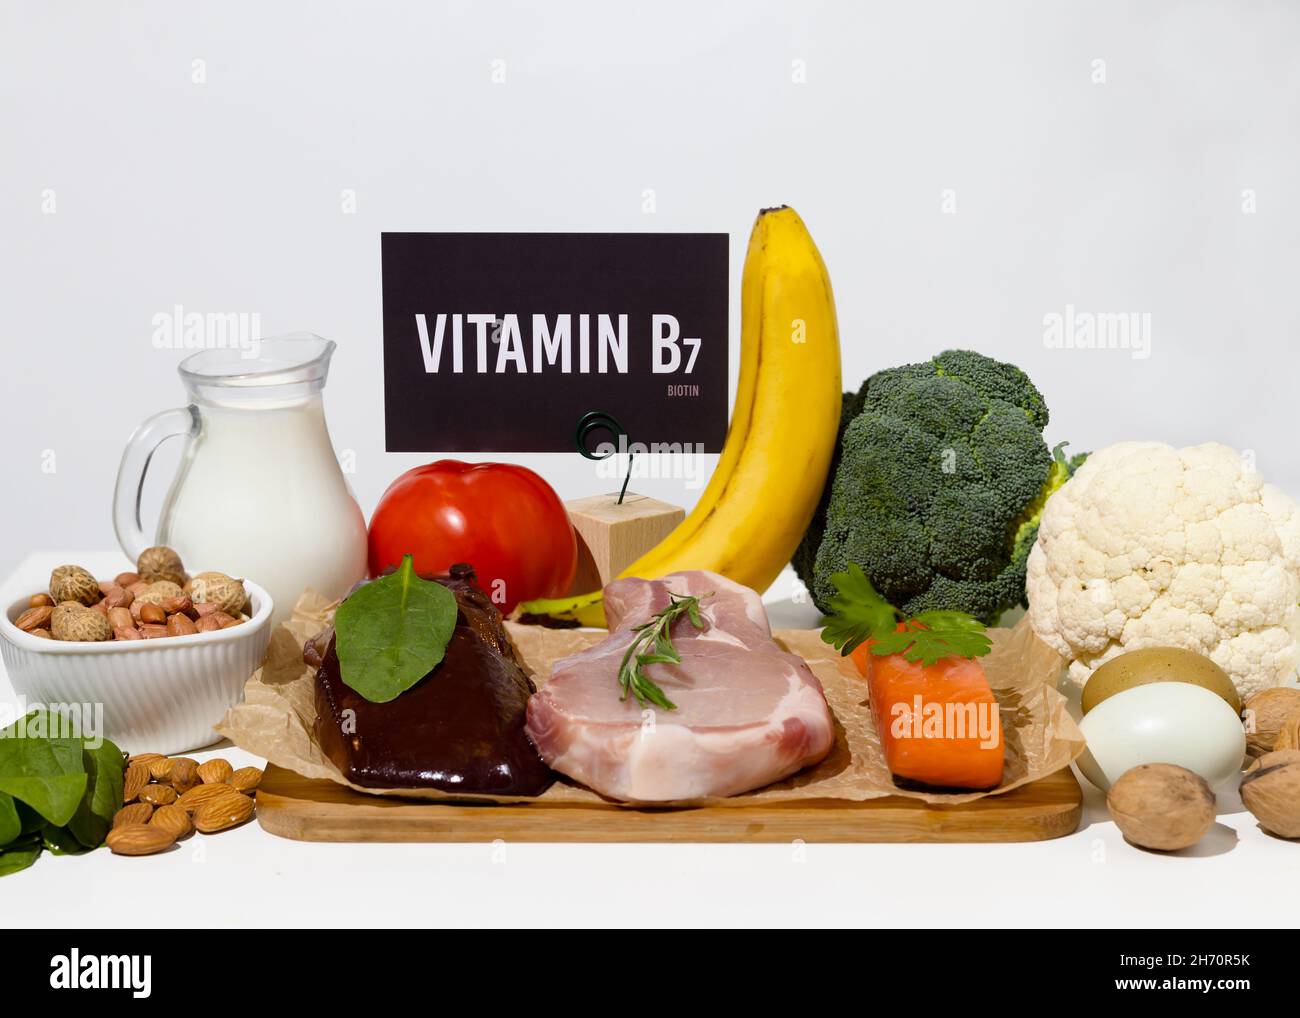 Un ensemble de produits naturels riches en vitamine B7 biotine.Concept d'alimentation saine.Panneau en carton avec inscription. Banque D'Images